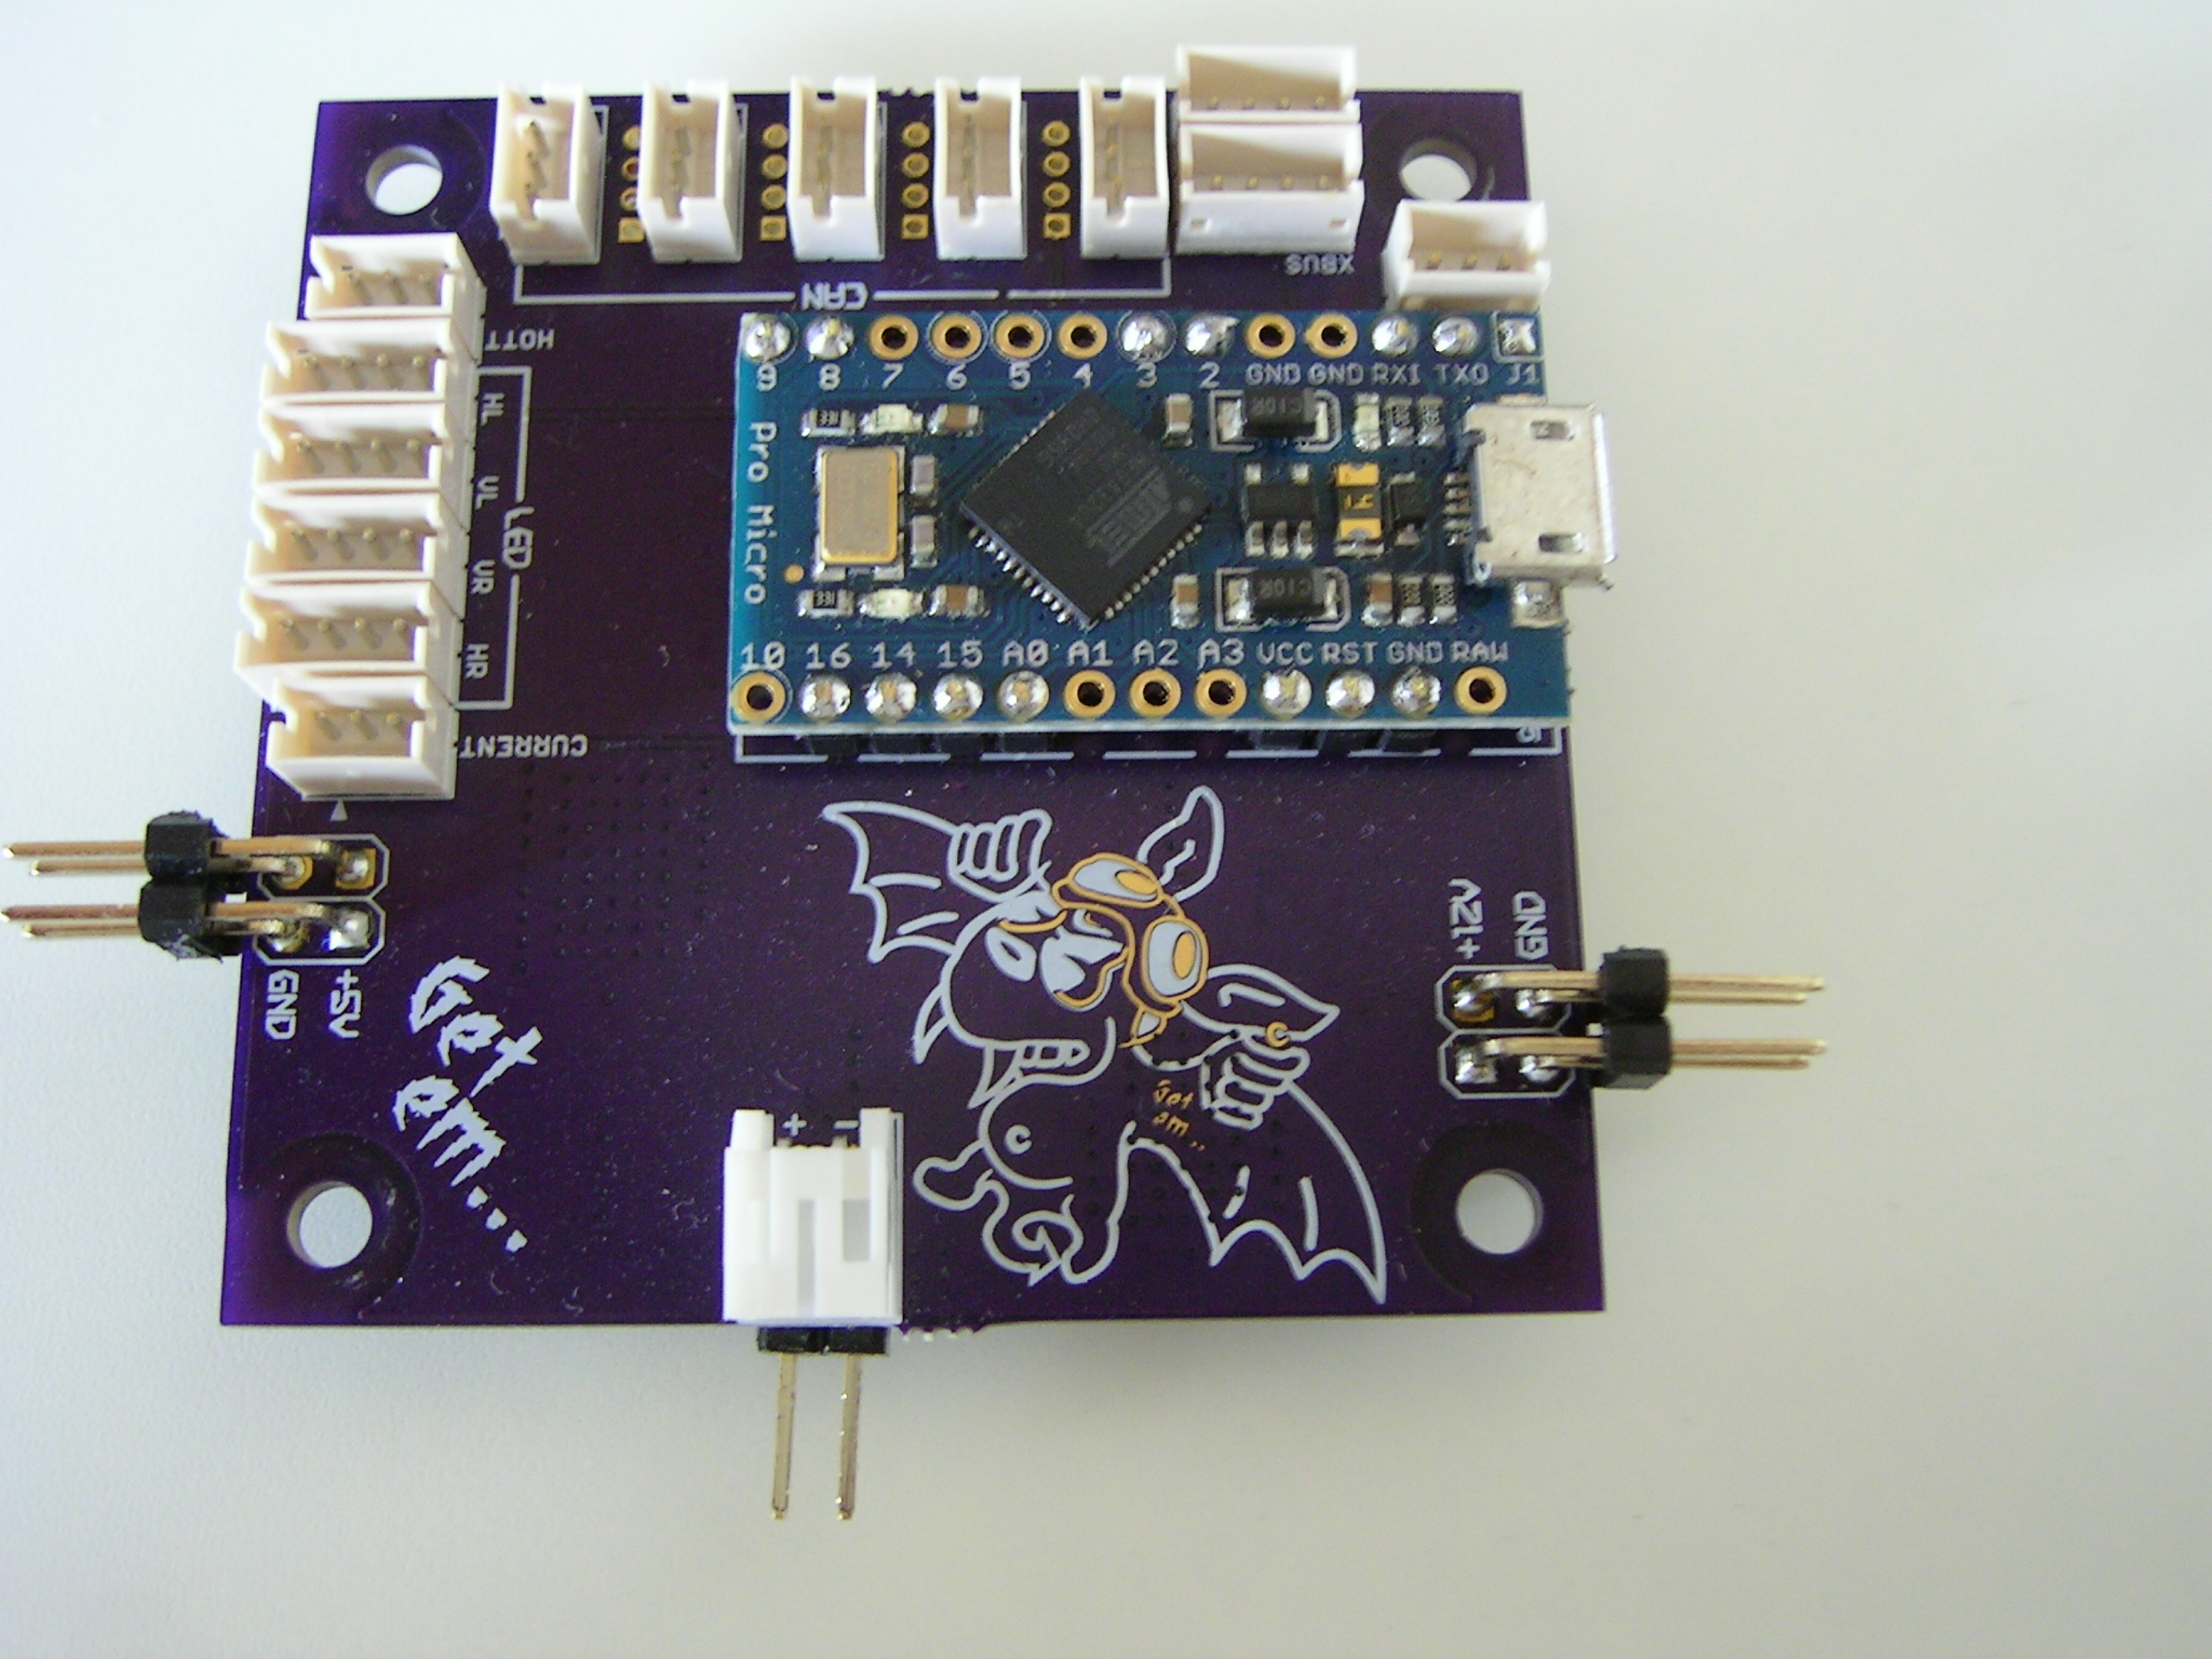 Mav2Telem Board - Mavlink-Daten der Autoquad werden zur Emulation von Spektrum Telemetriesensoren genutzt